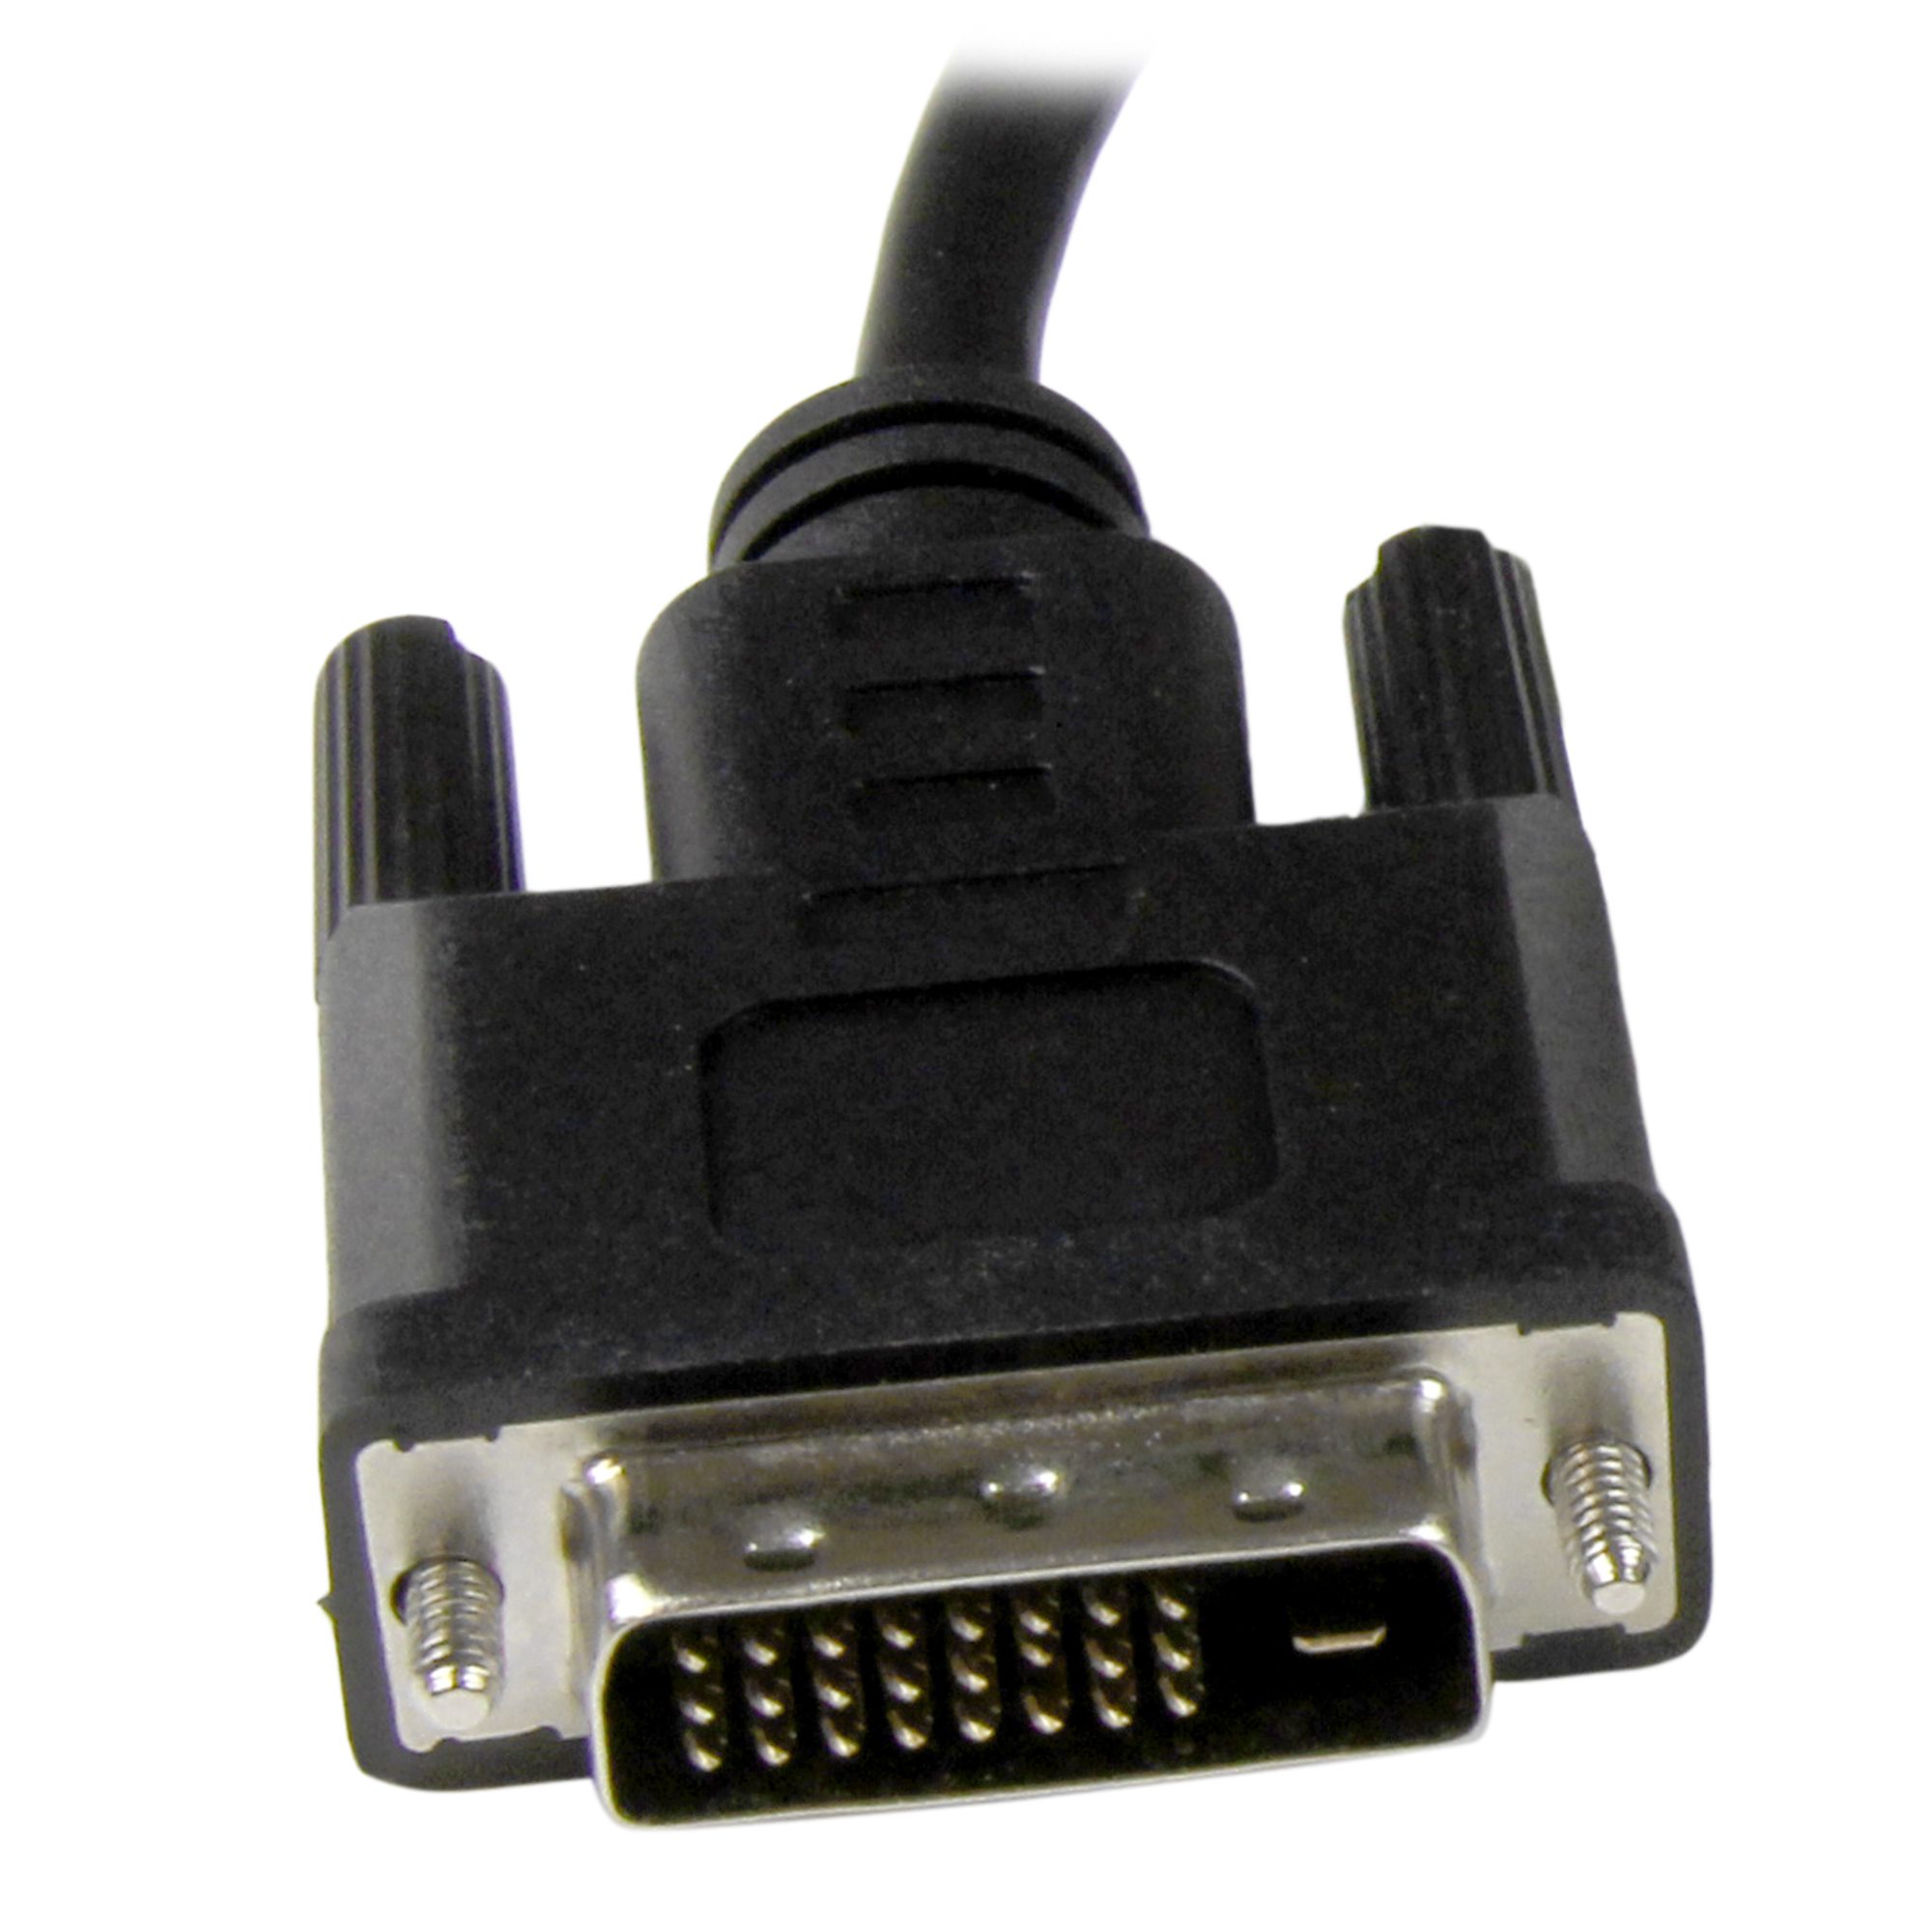 Adaptador convertidor DVI a HDMI - 33586 - MaxiTec